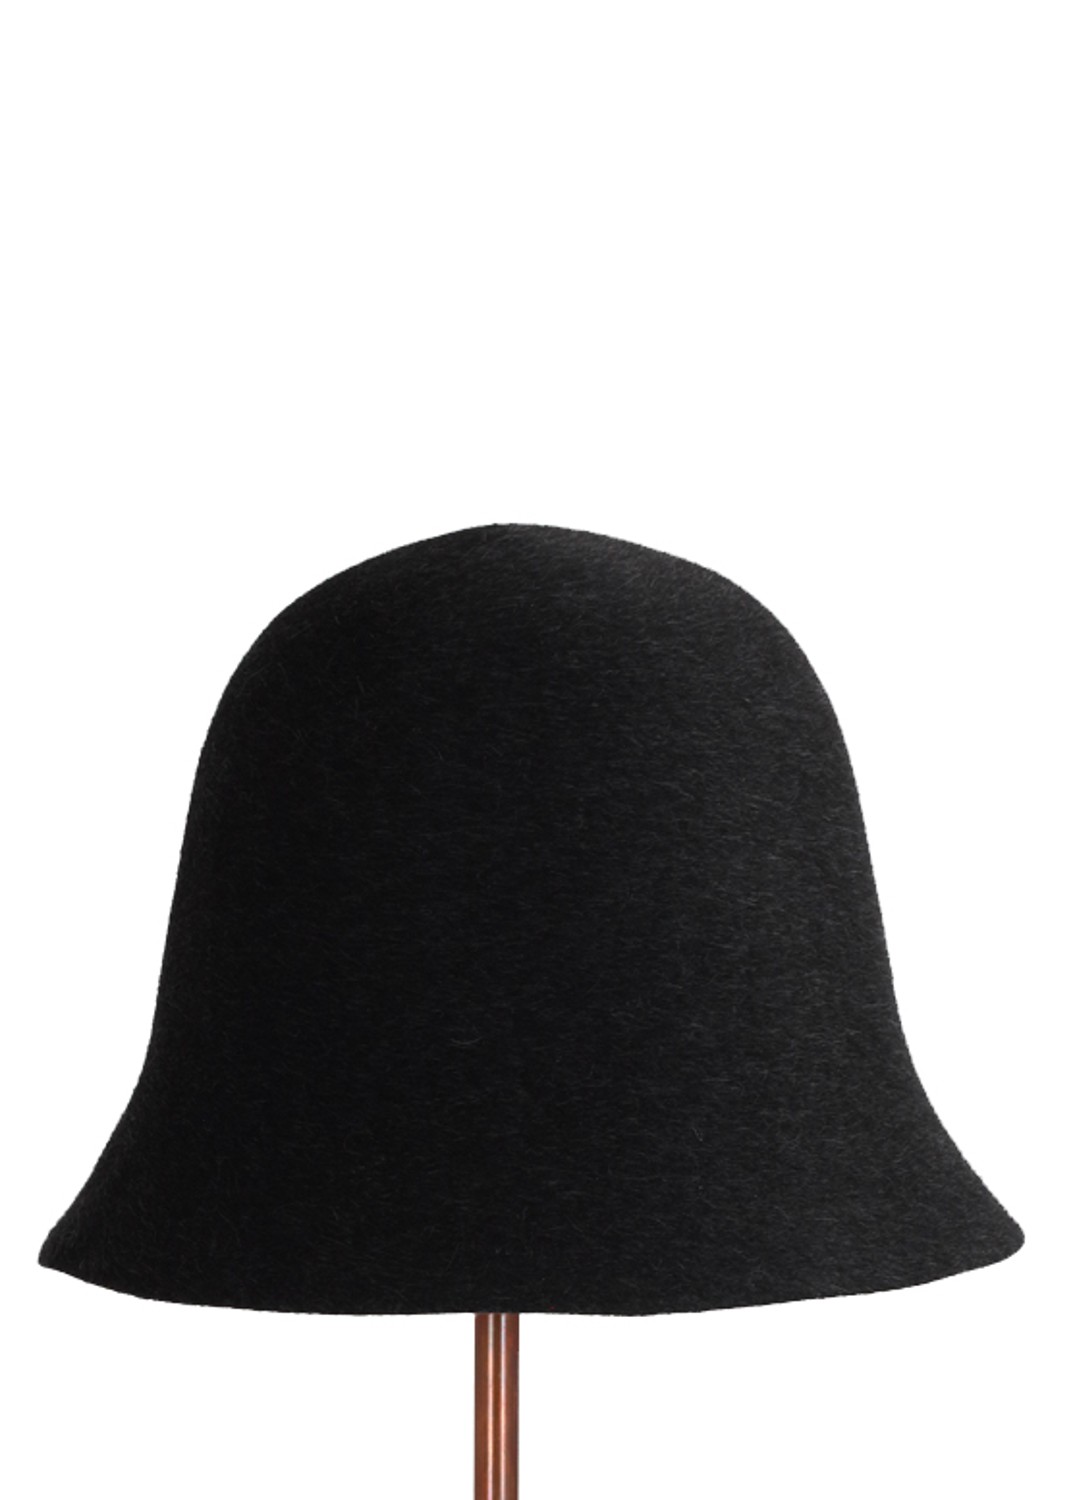 shop Flapper Saldi Accessori: Cappello Flapper, modello Renata, in lana infeltrita nera. 

Composizione: 100% lana. number 1542